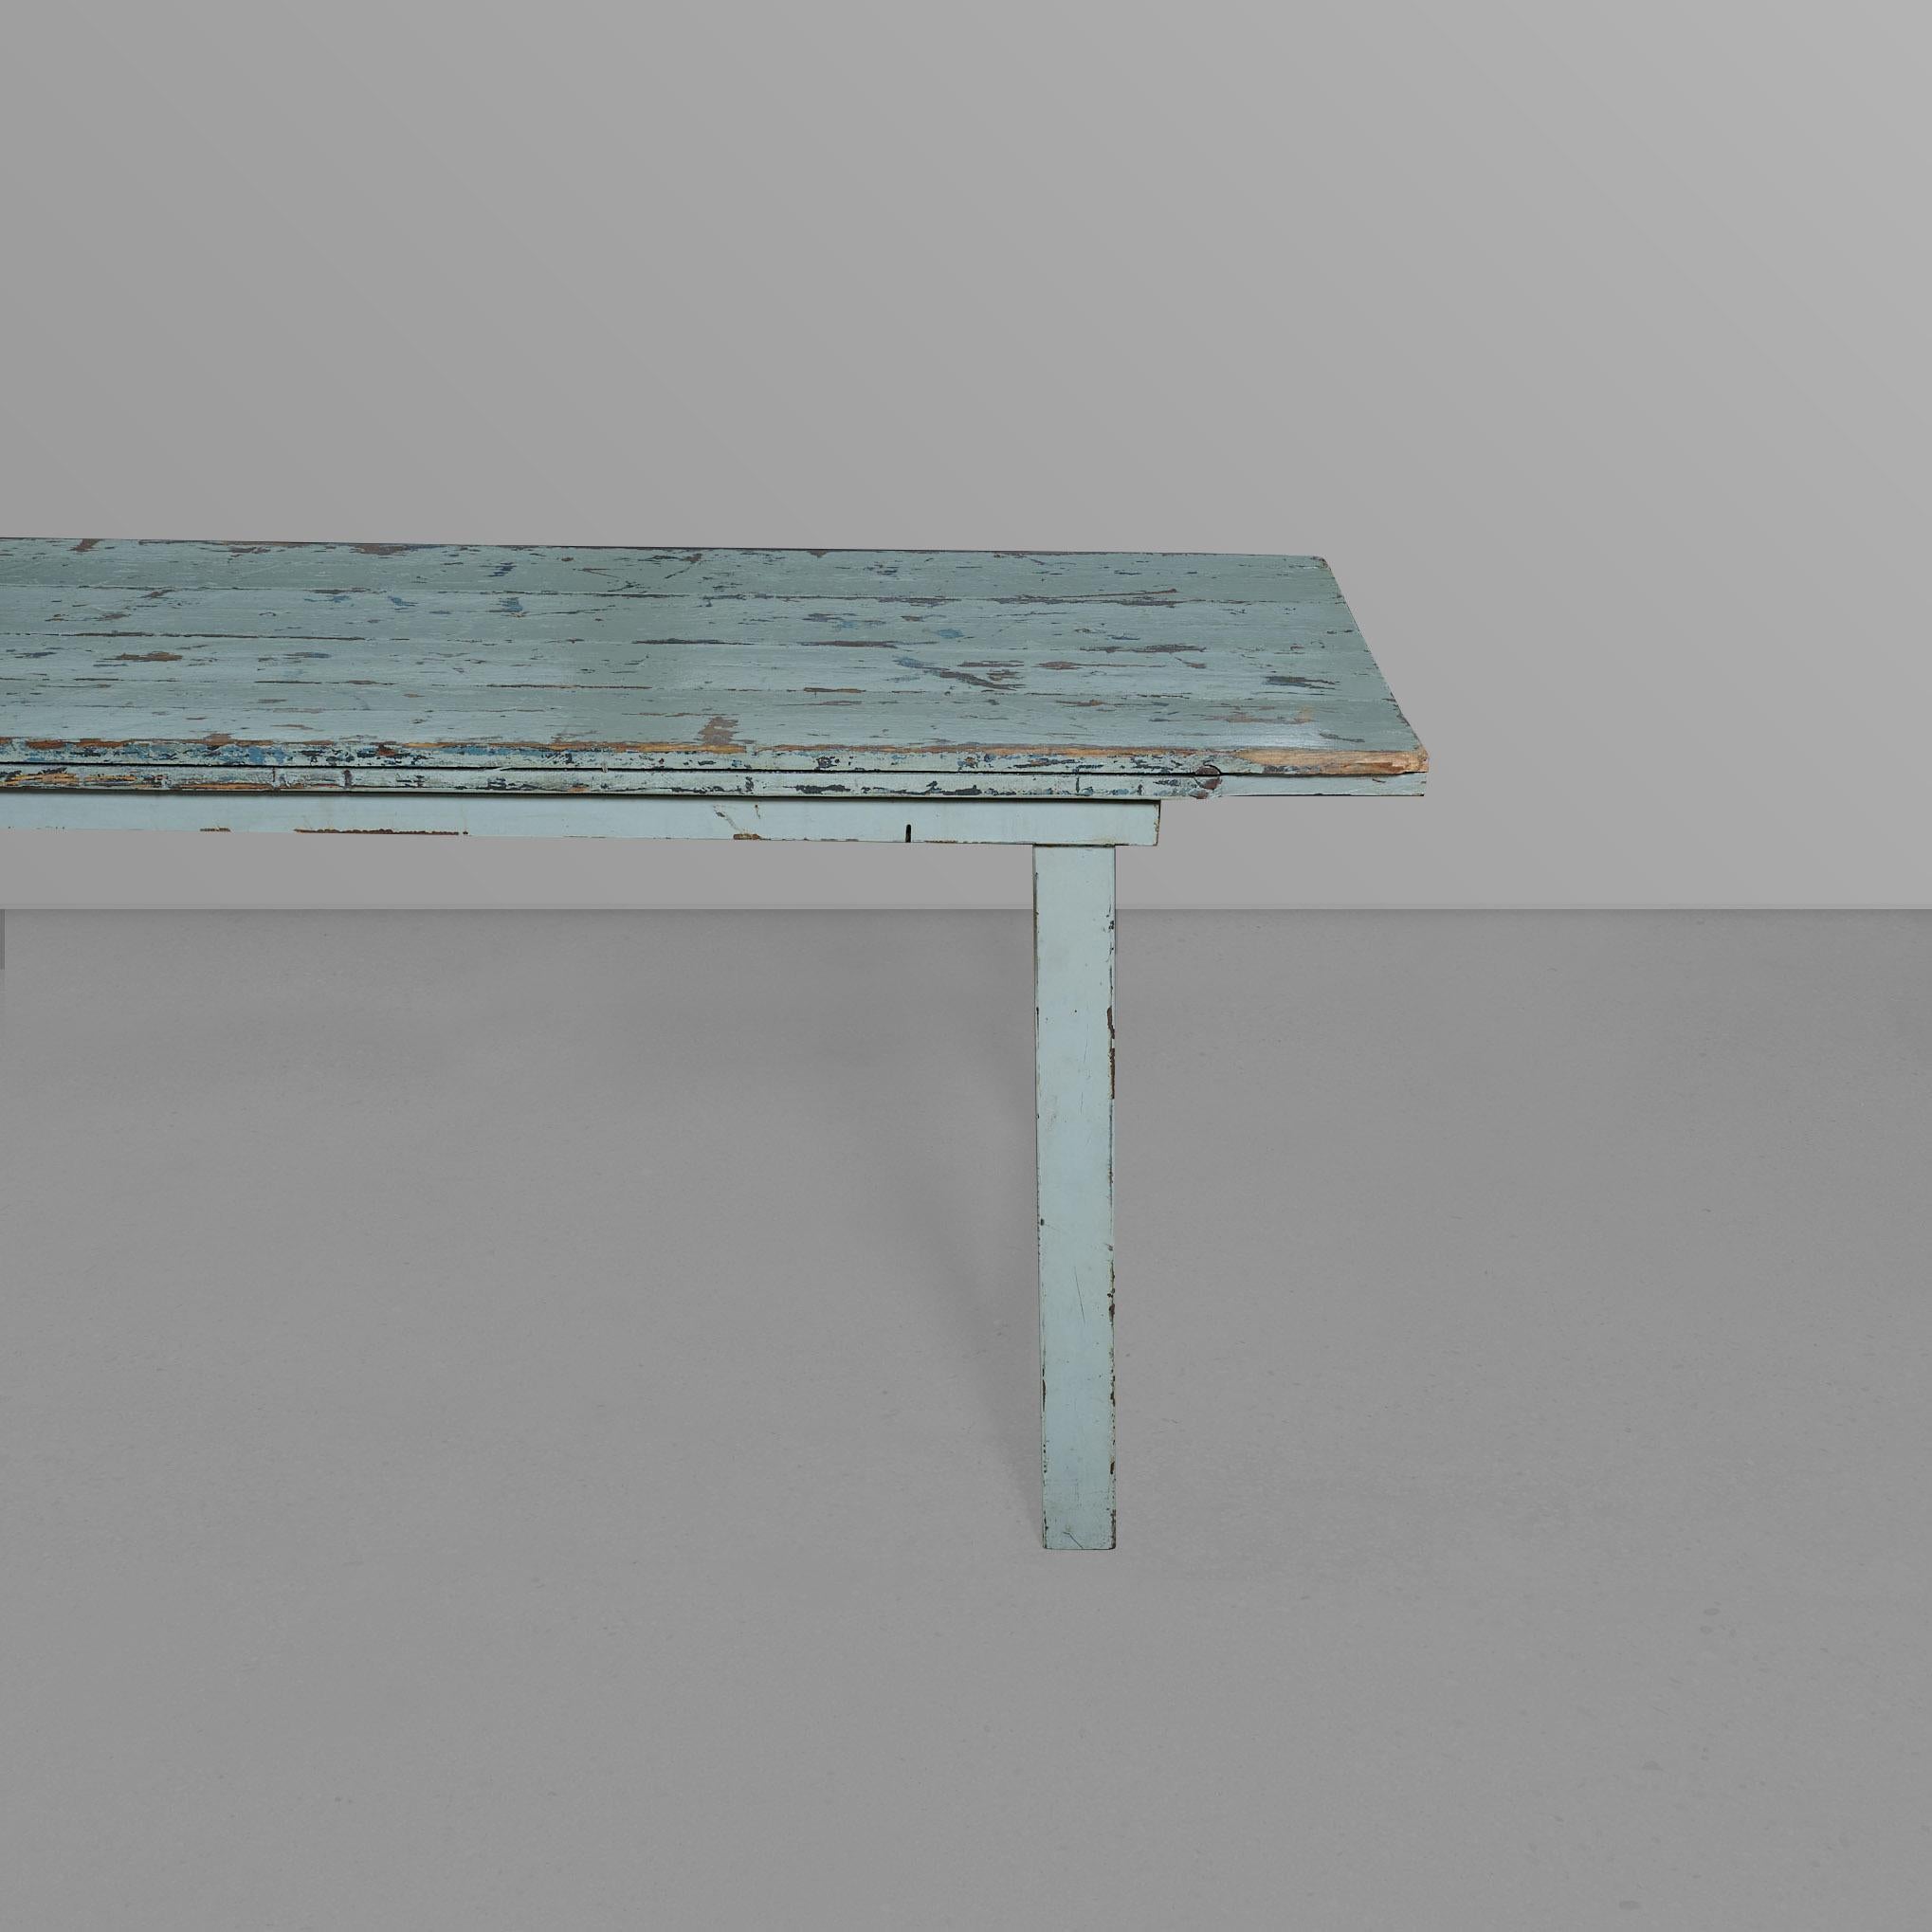 Tisch mit sechs Beinen, einem Eisengestell und einer wunderschönen blauen Holzplatte.

